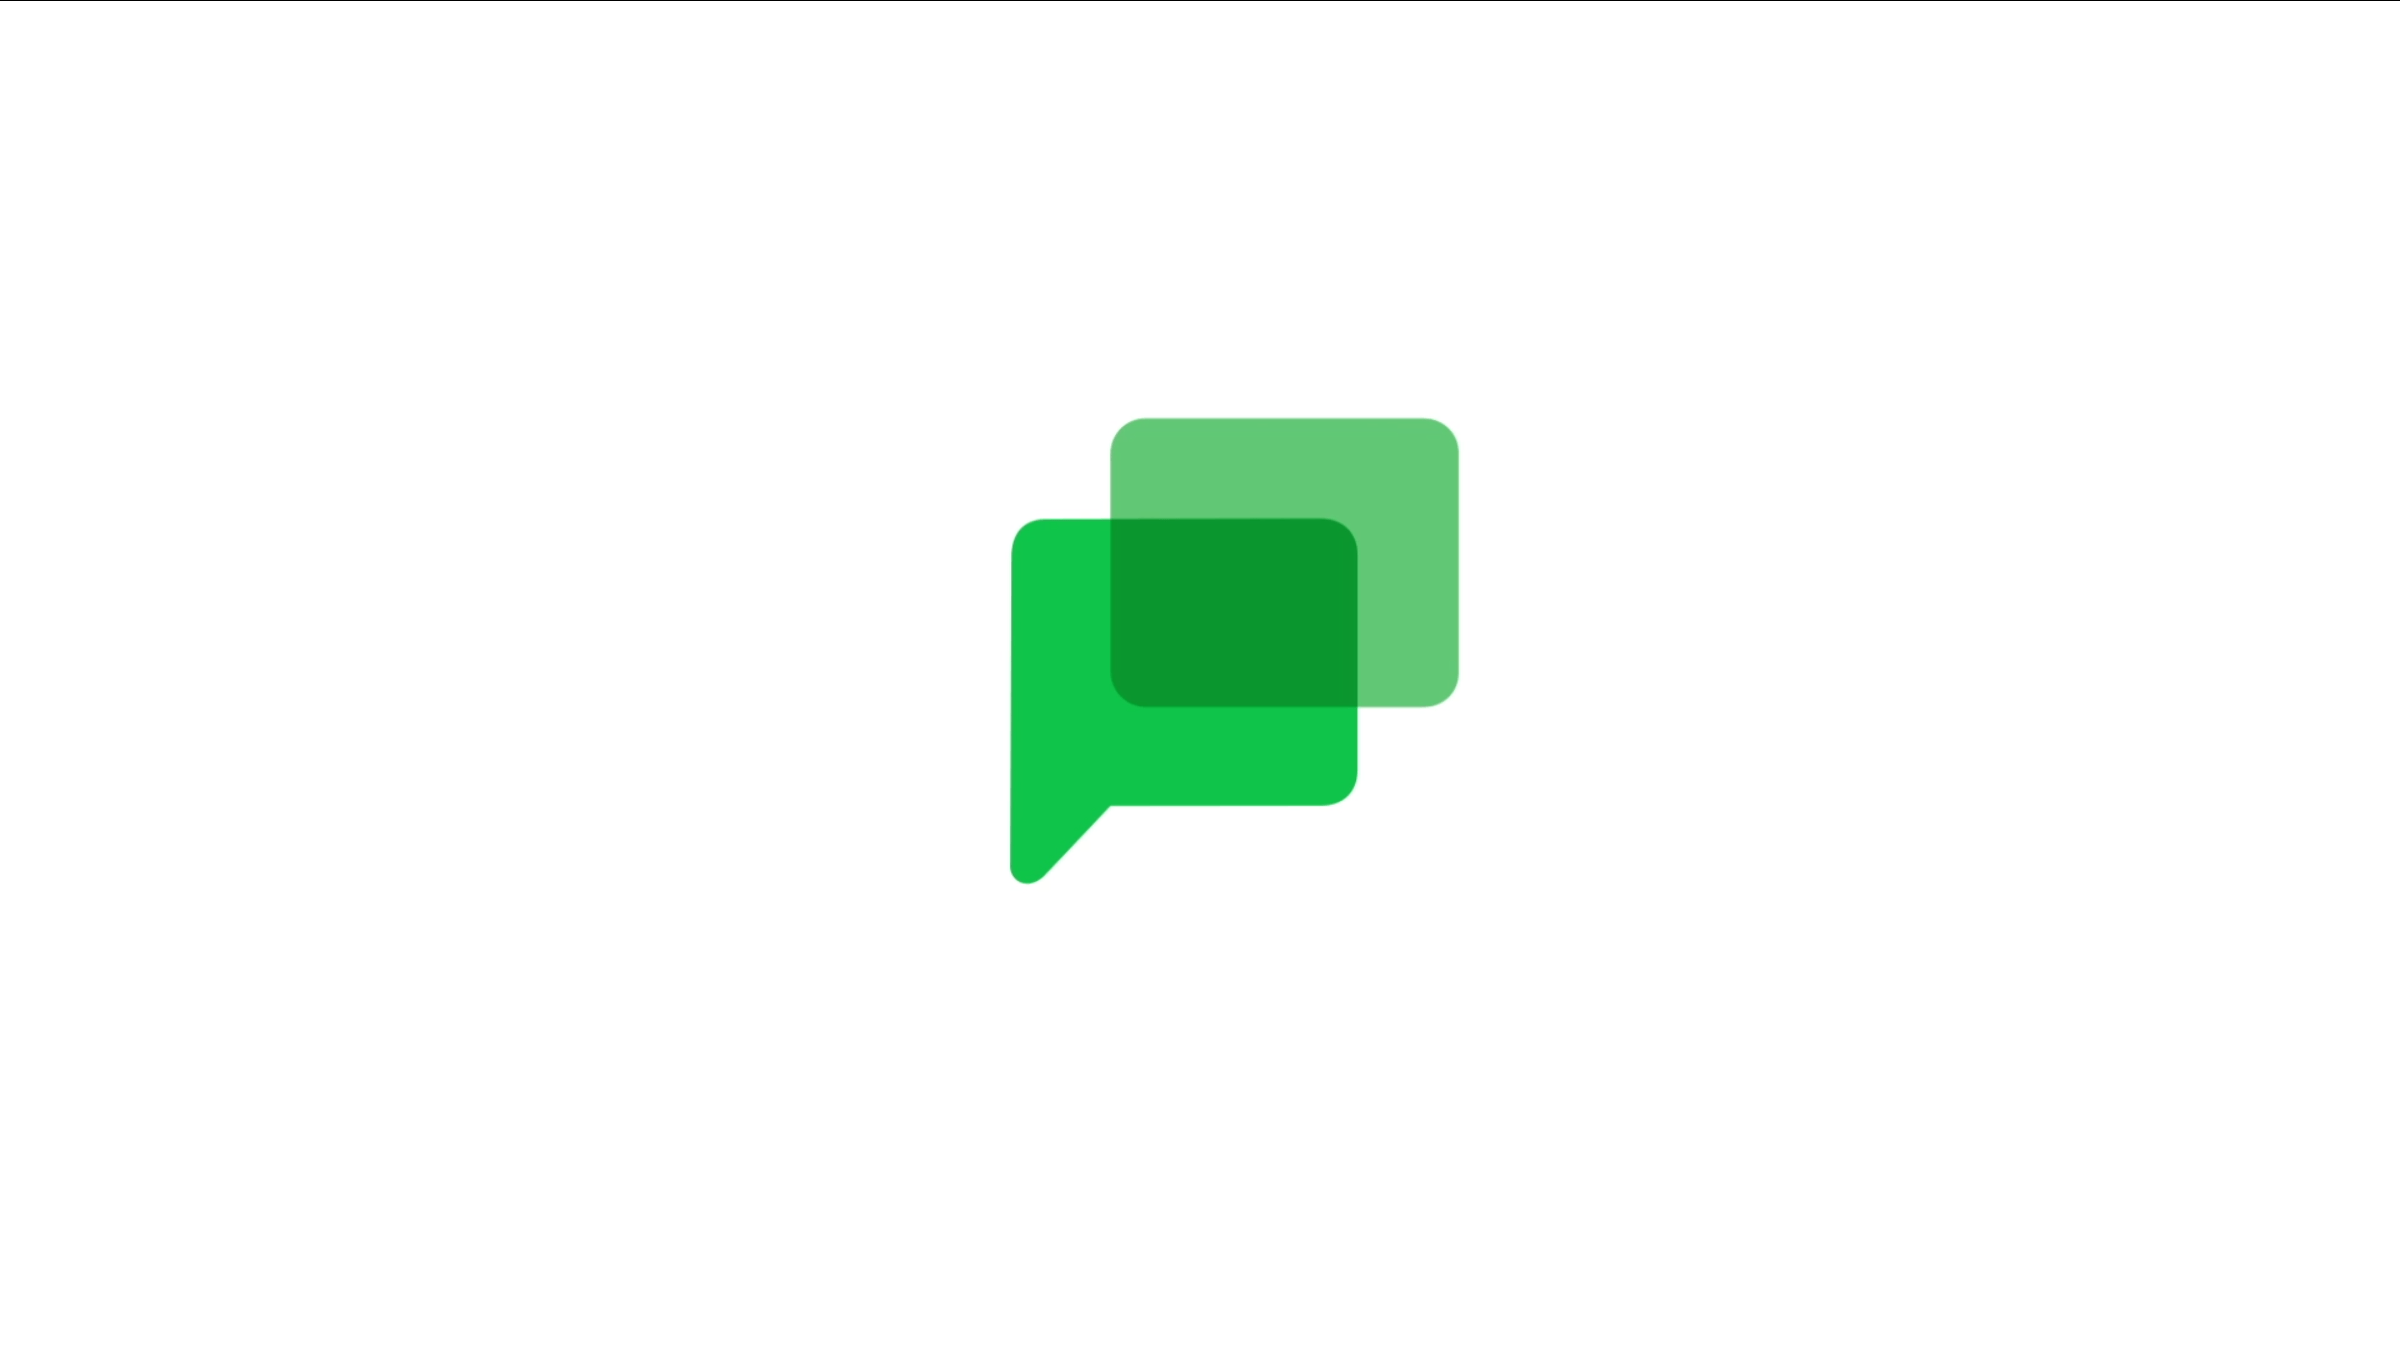 Google Chat per Android riceve alcune novità per le emoji (foto)